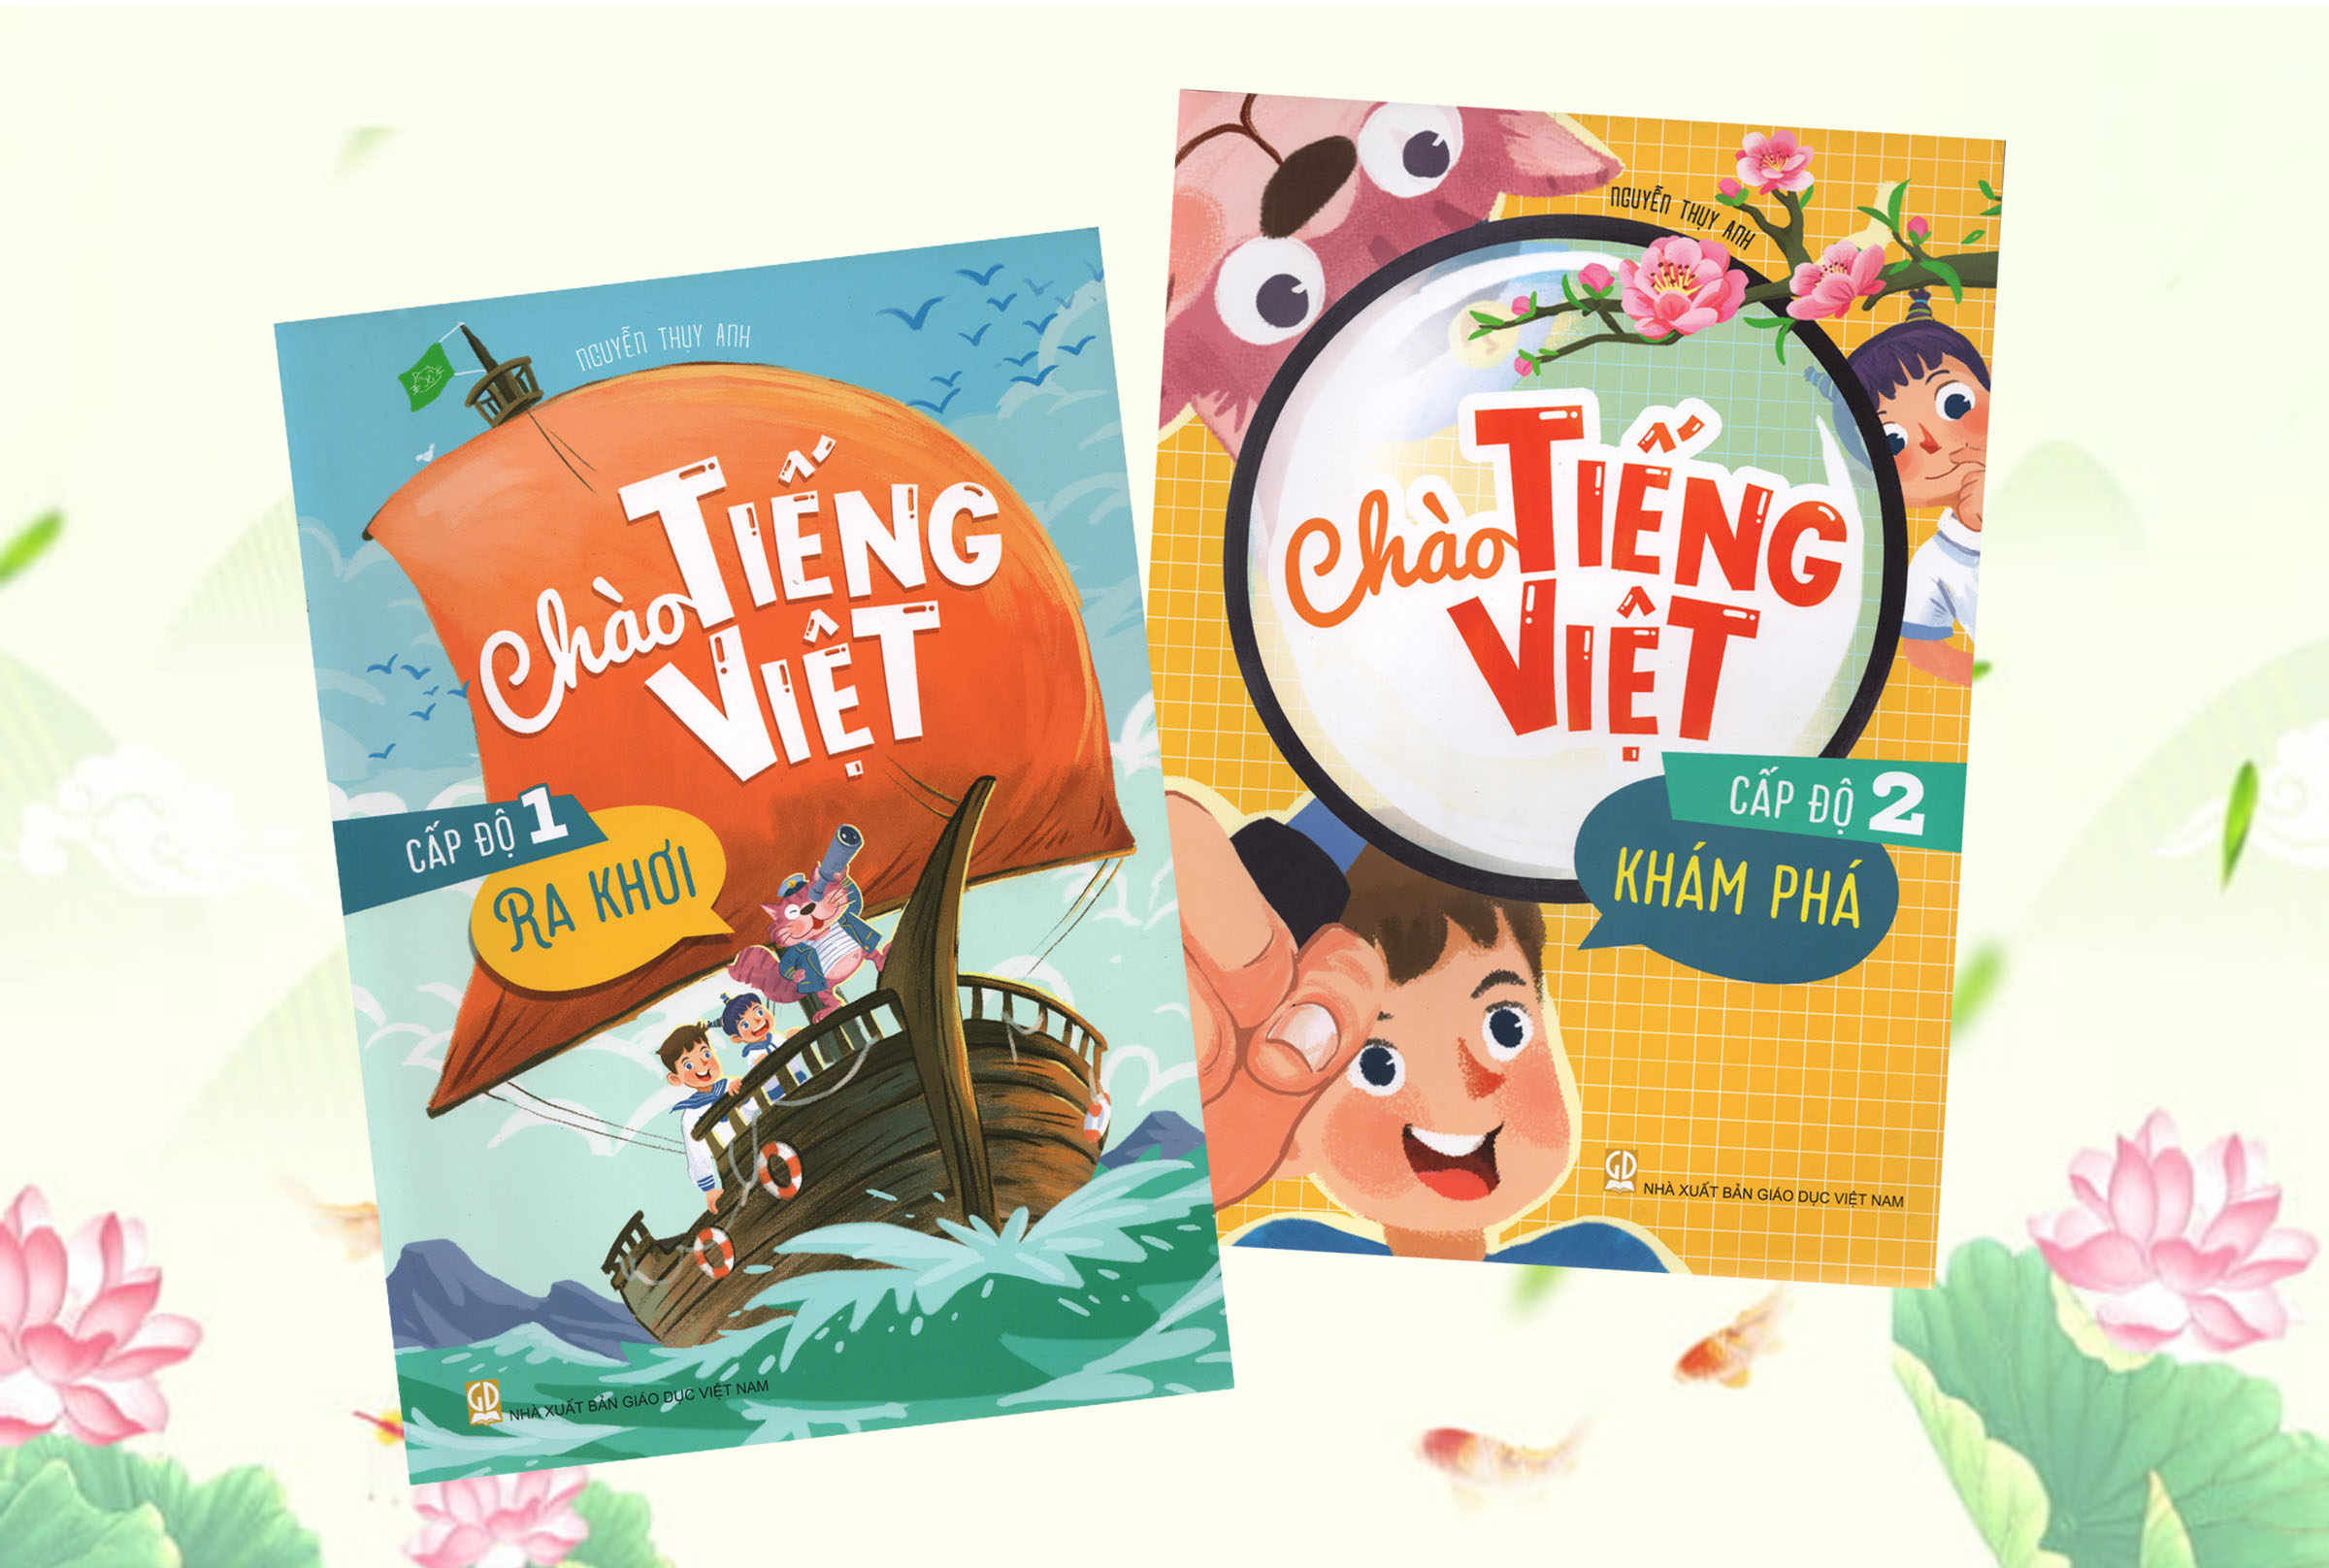 Chào Tiếng Việt – Một cách tiếp cận mới trong việc dạy Tiếng Việt cho trẻ em ở nước ngoài